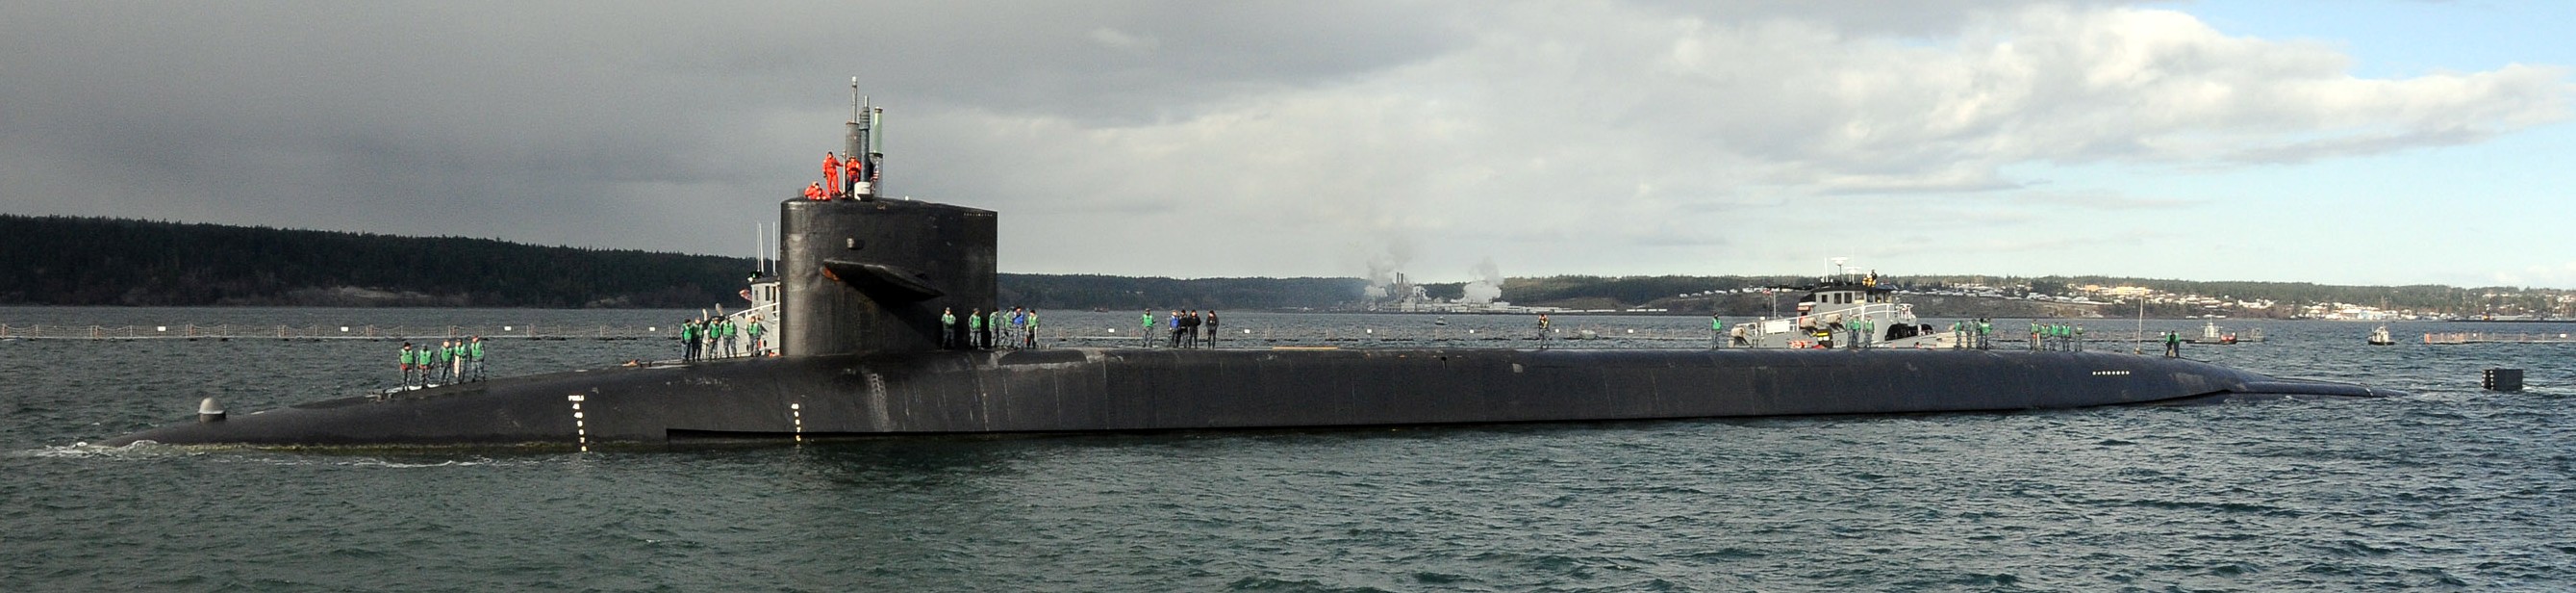 ssgn-726 uss ohio guided missile submarine us navy 2012 30 indian island washington